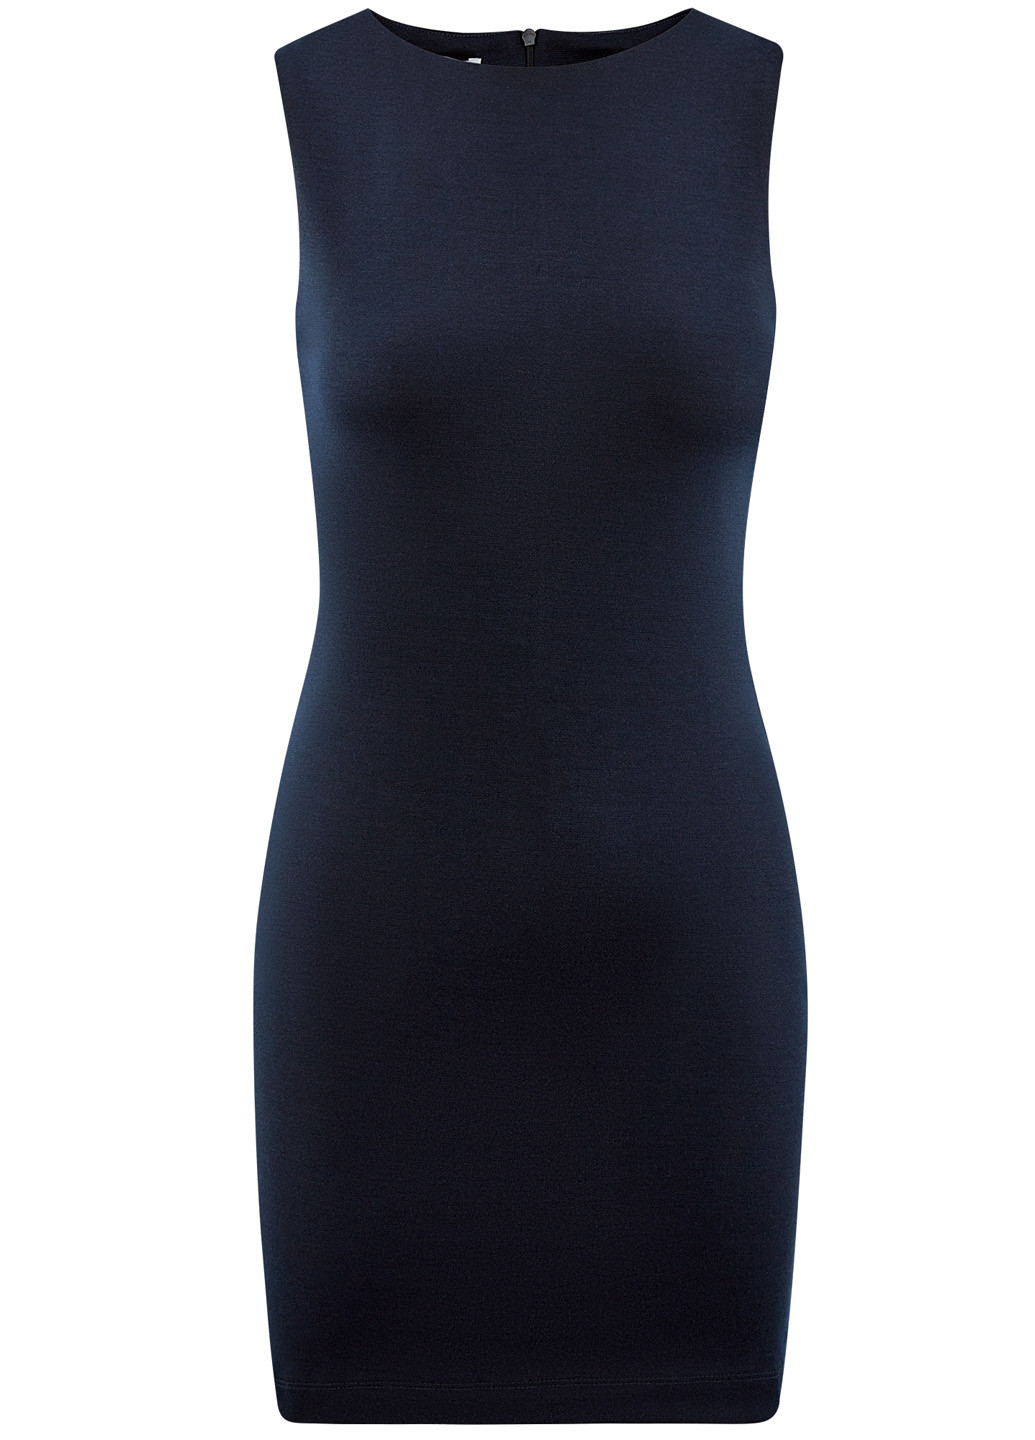 Темно-синее деловое платье короткое Oodji однотонное